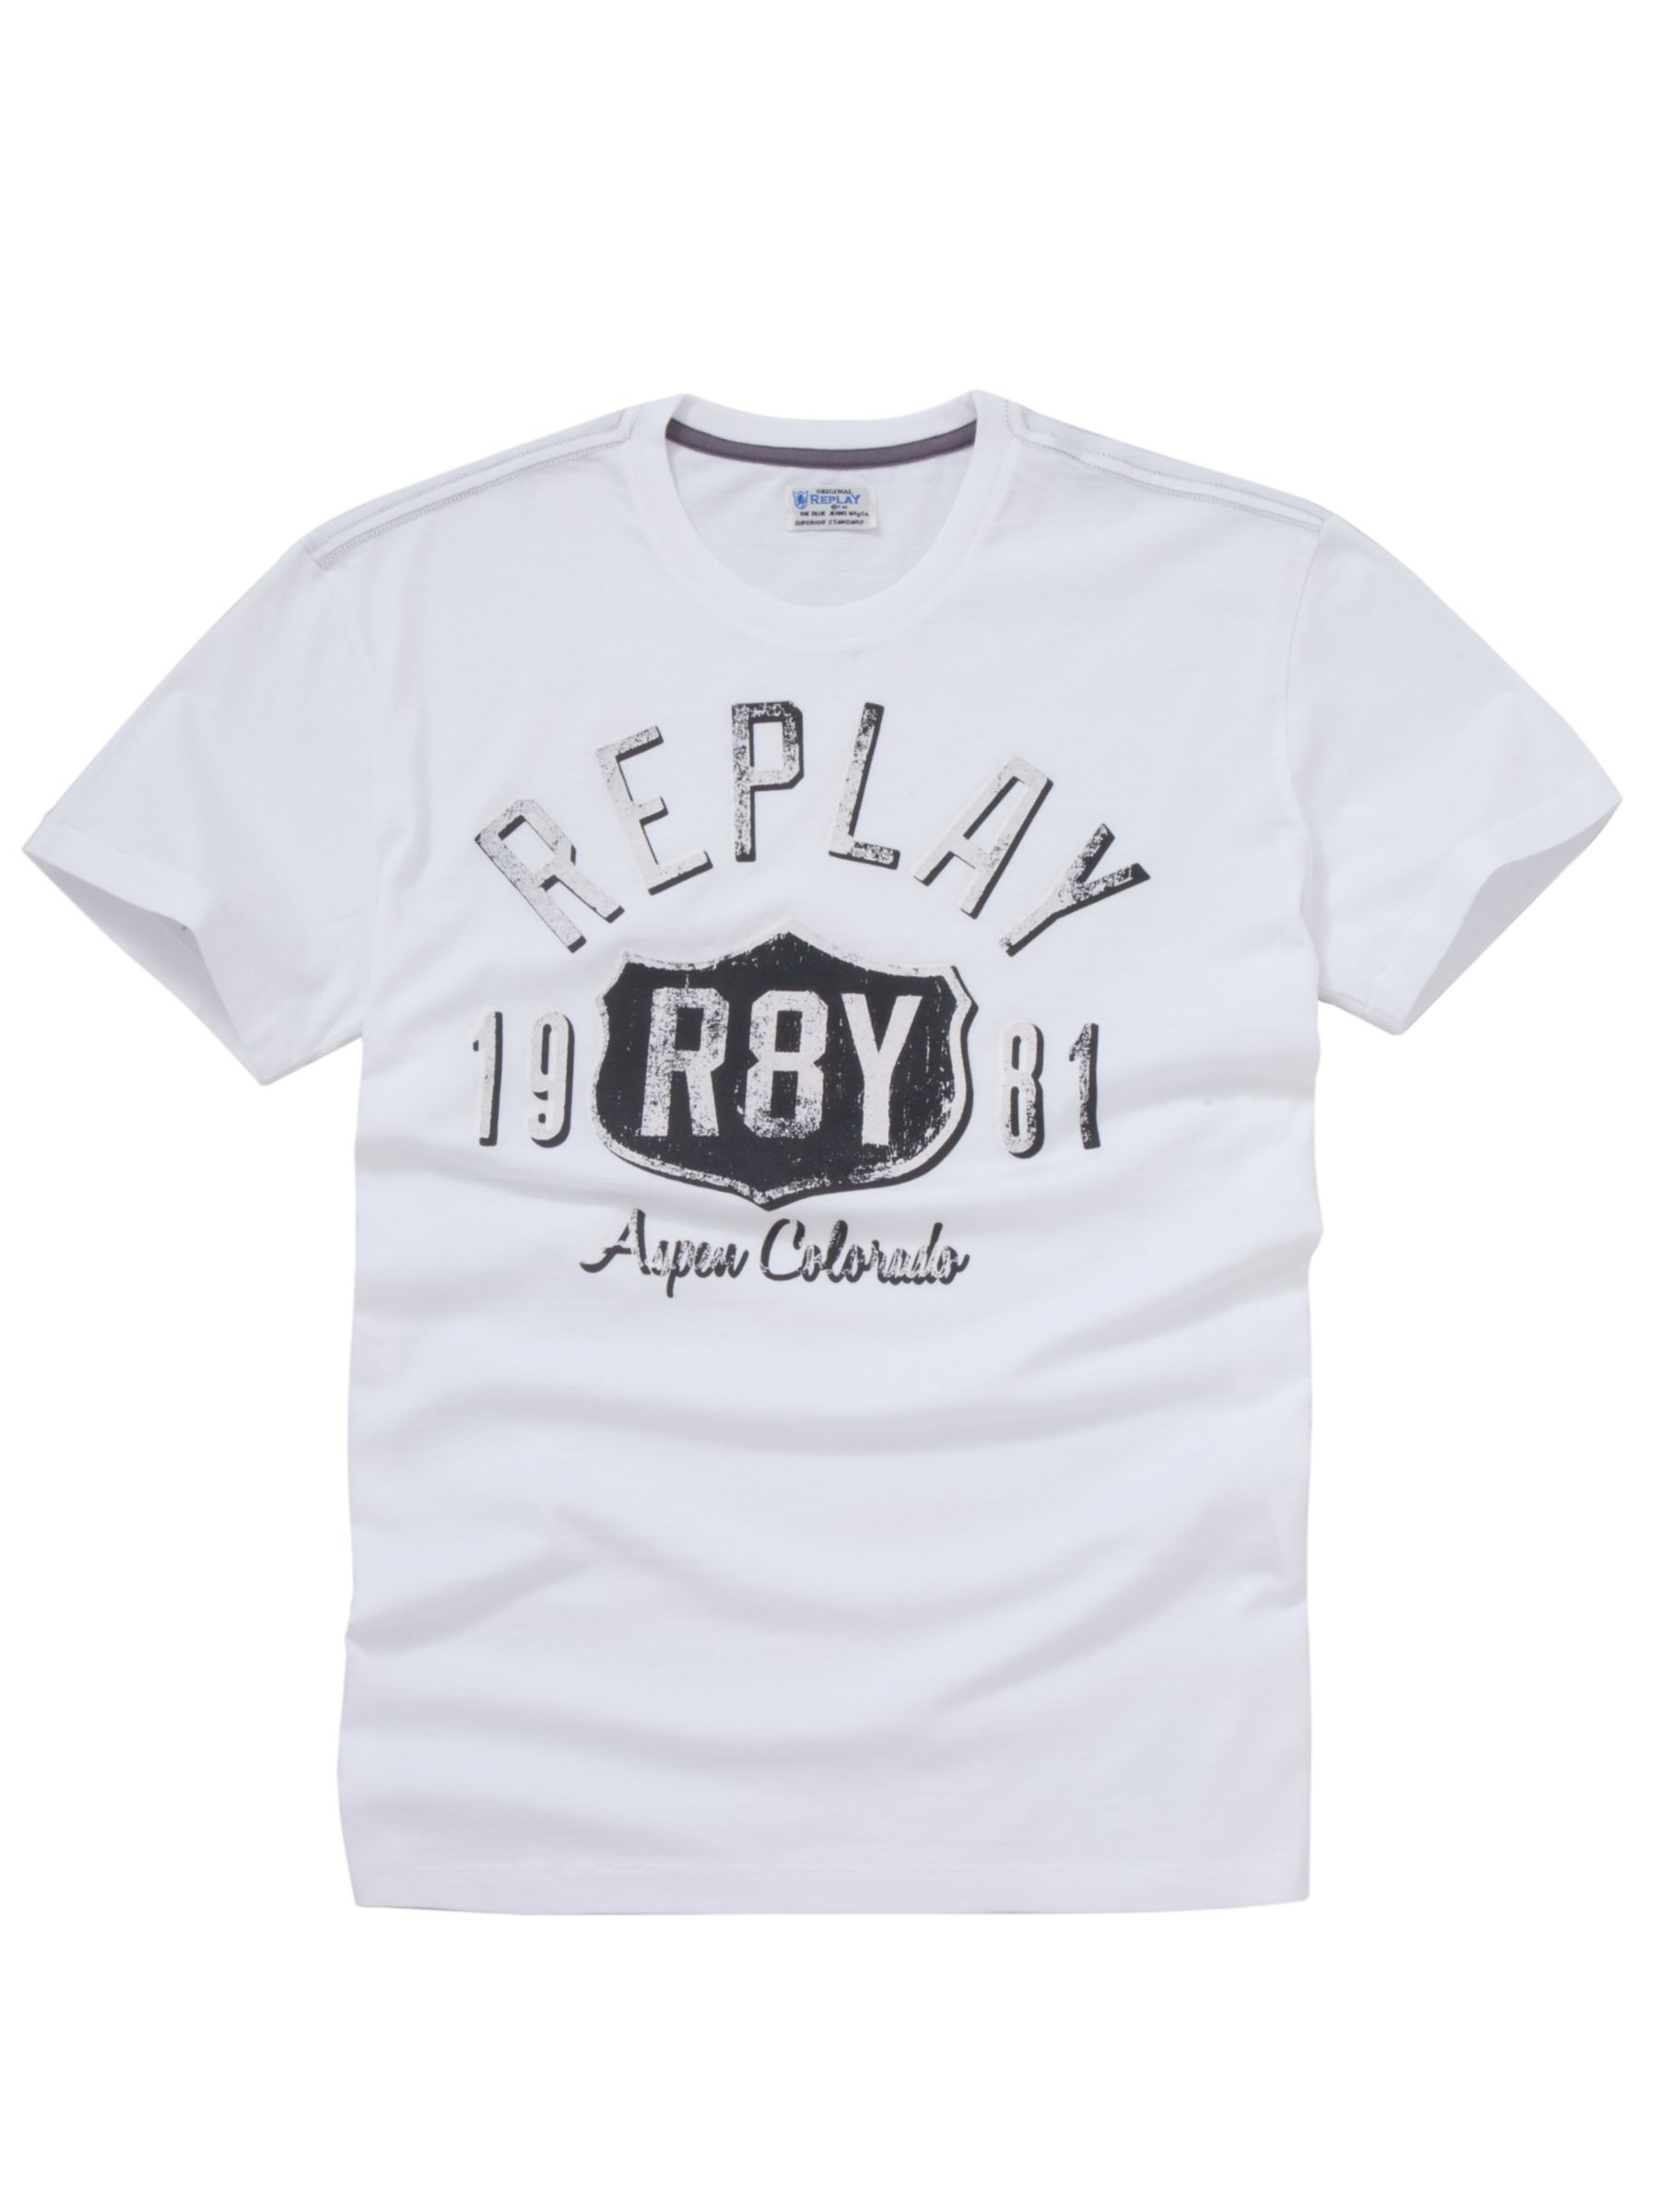 Replay Highway T-Shirt, White